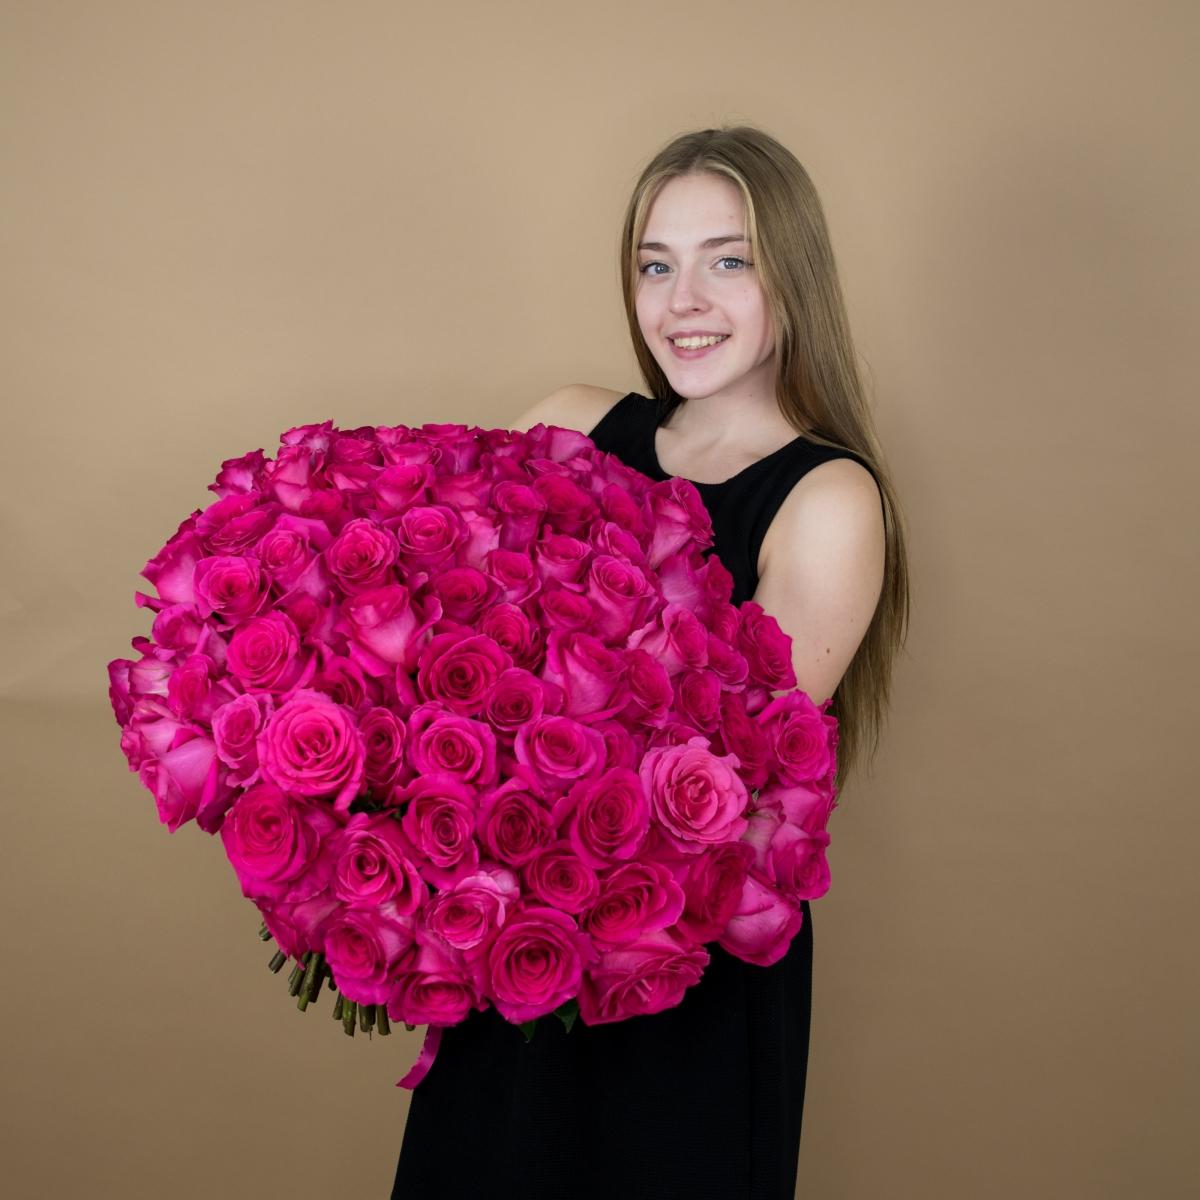 Букет из розовых роз 75 шт. (40 см) articul: 86240